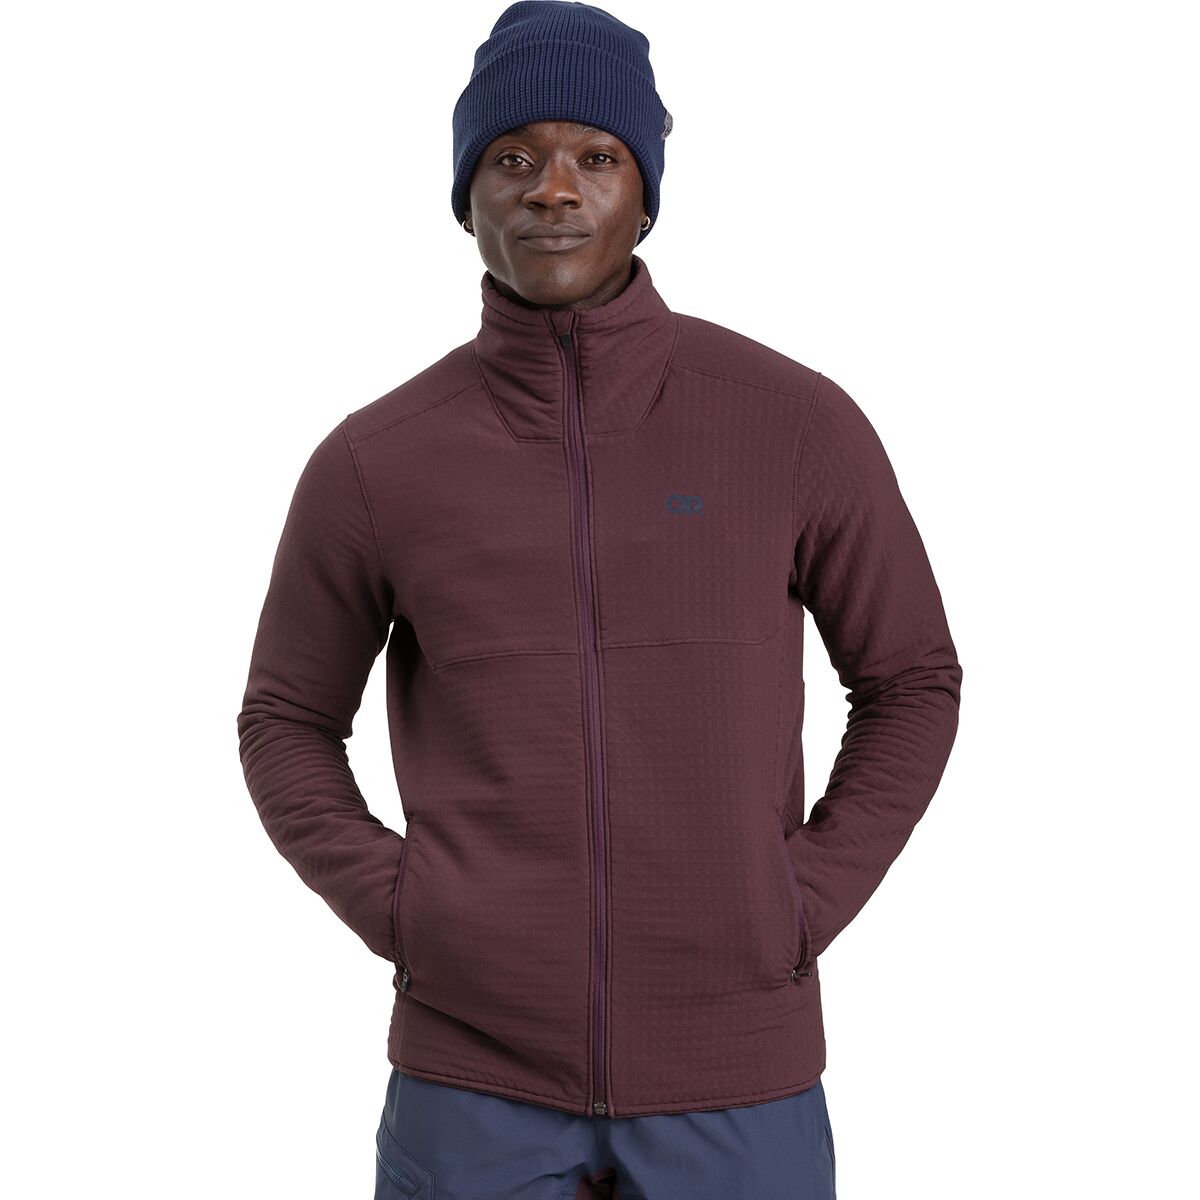 Outdoor Research Vigor Plus Fleece Jacket - Men's